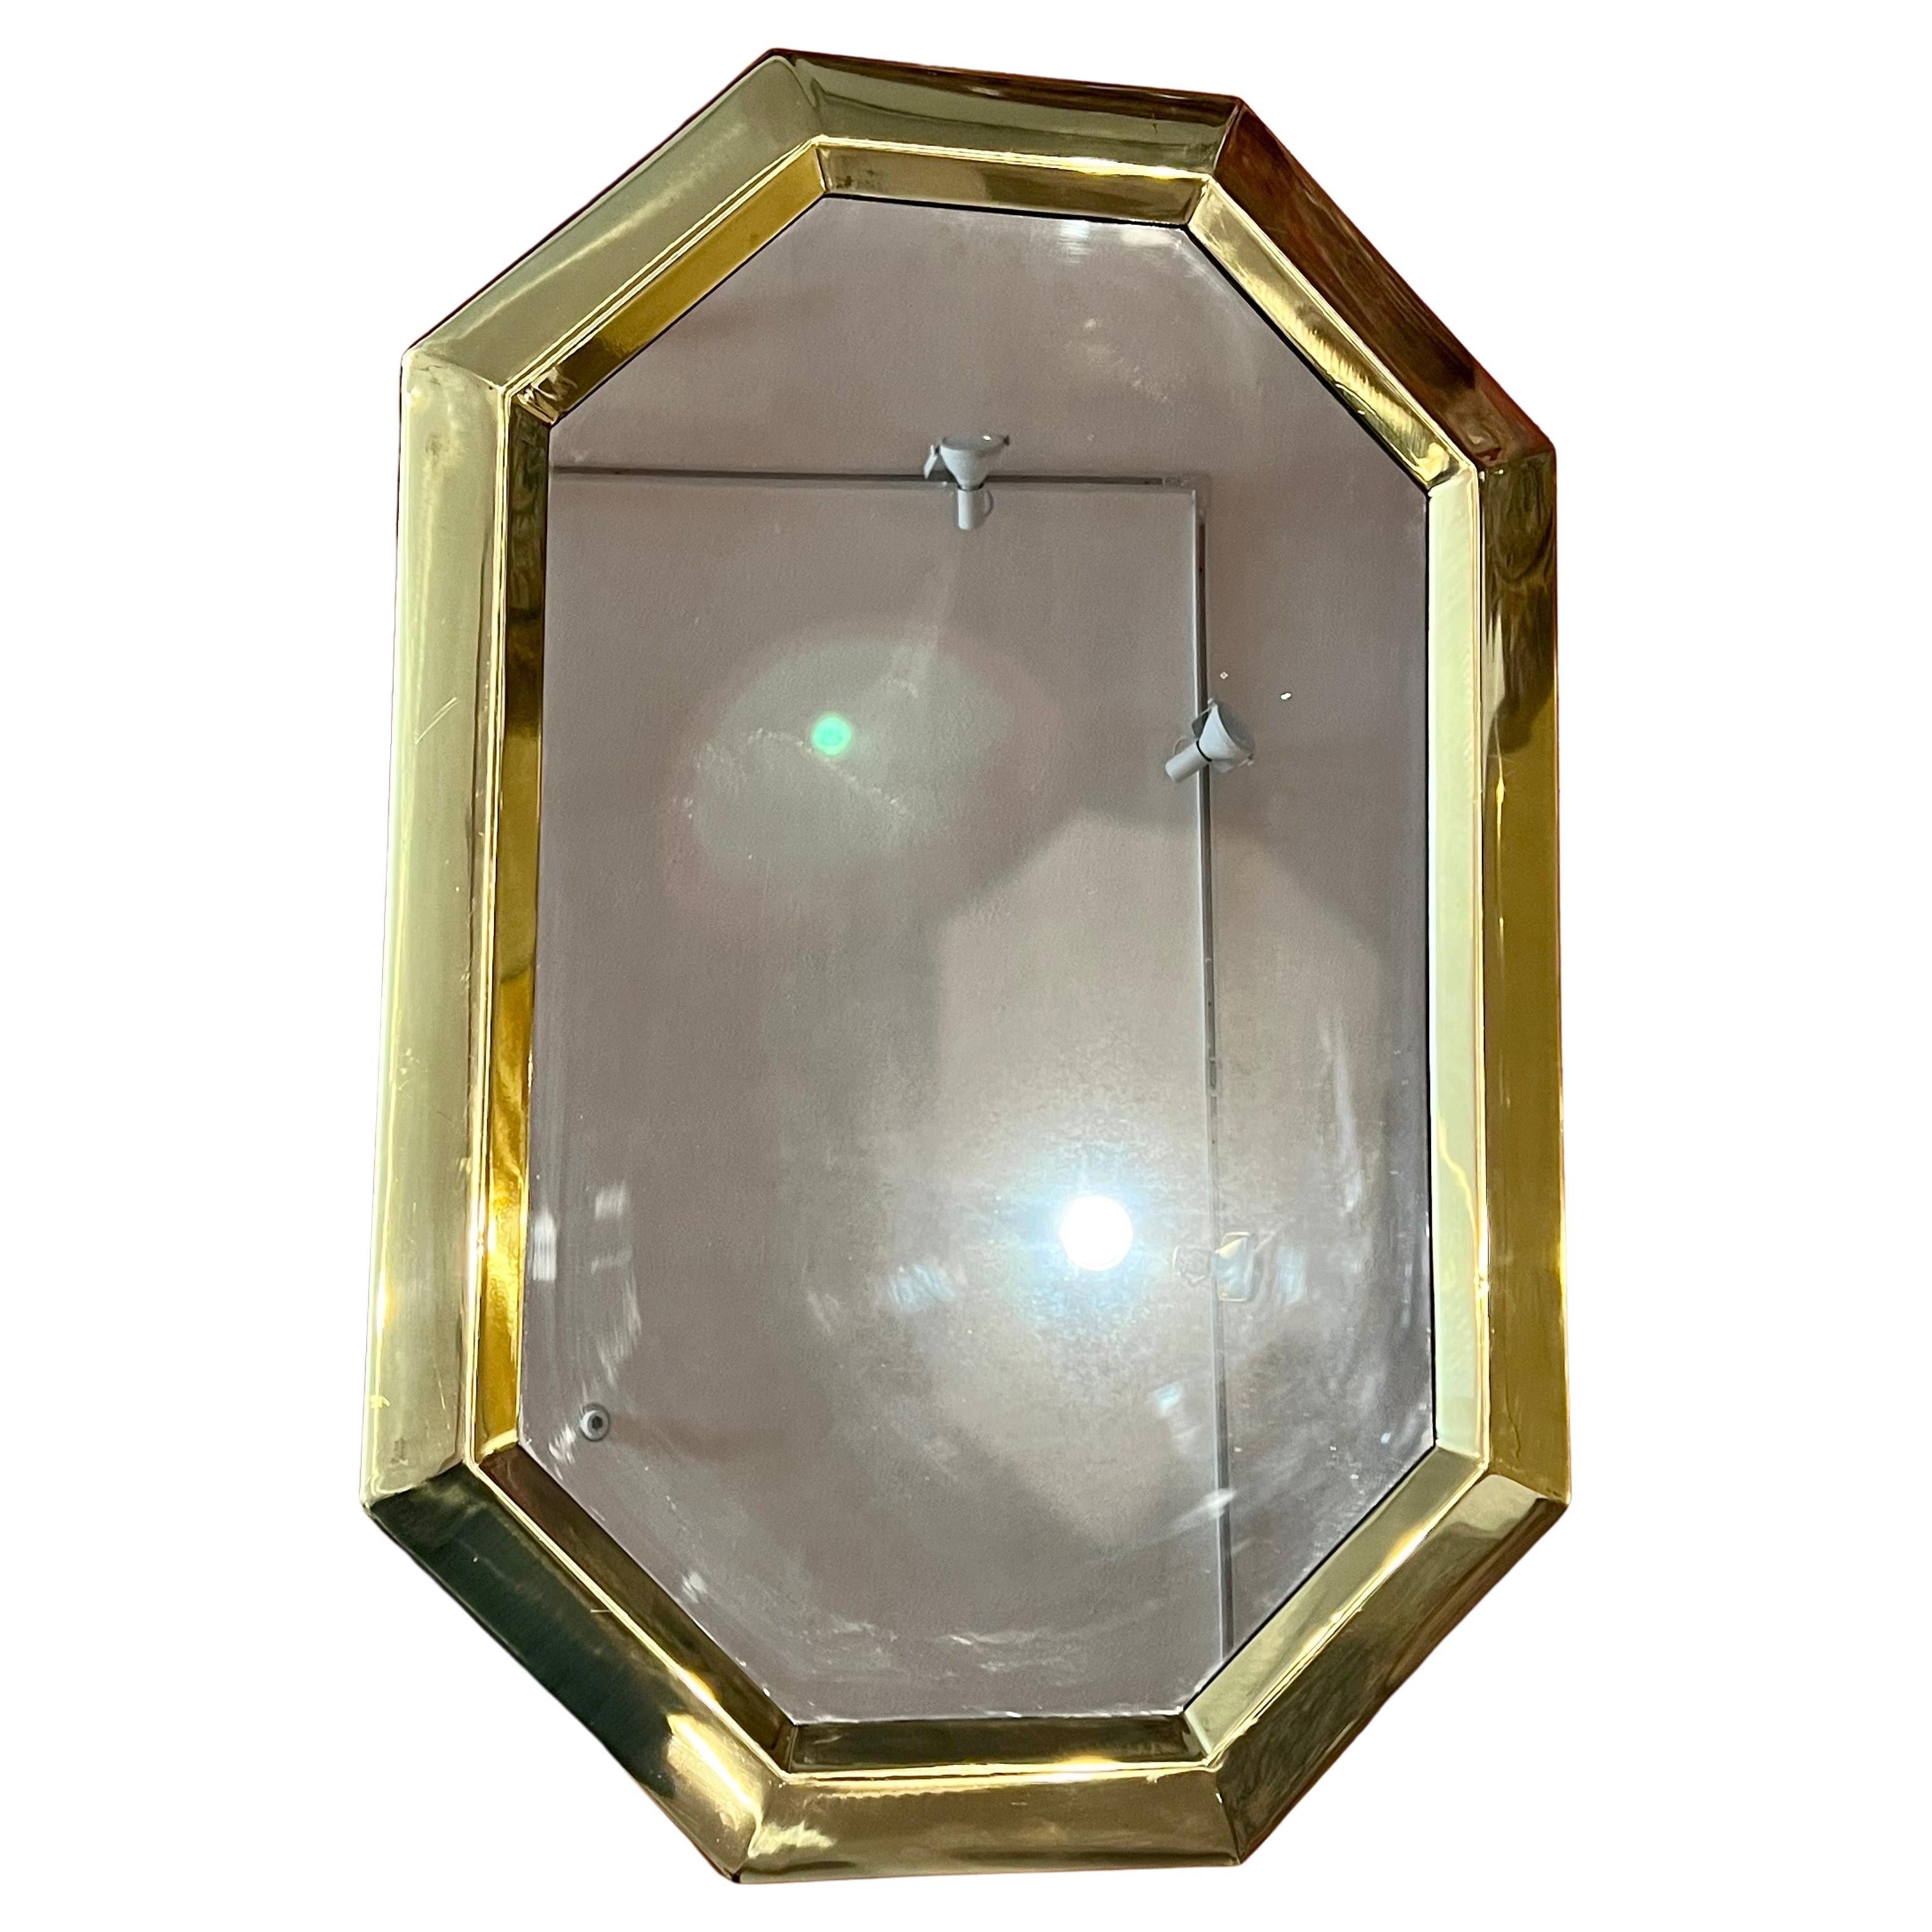 Beau cadre en laiton massif poli, miroir italien circa les années 1980 peut être suspendu horizontalement ou verticalement simple et élégant.